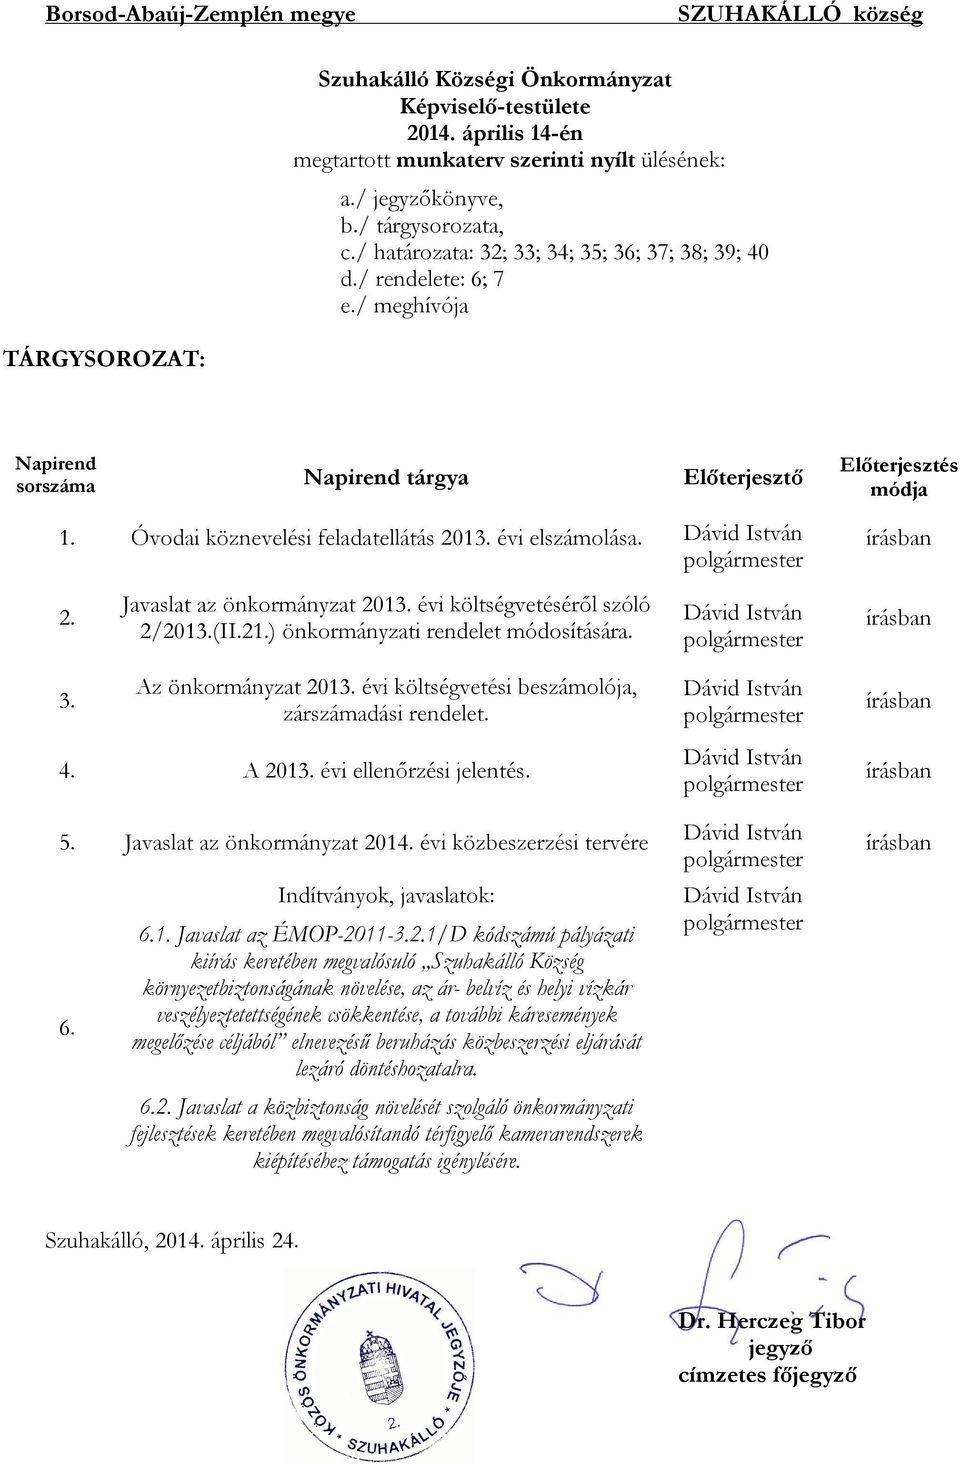 Óvodai köznevelési feladatellátás 2013. évi elszámolása. Dávid István polgármester 2. Javaslat az önkormányzat 2013. évi költségvetéséről szóló 2/2013.(II.21.) önkormányzati rendelet módosítására.